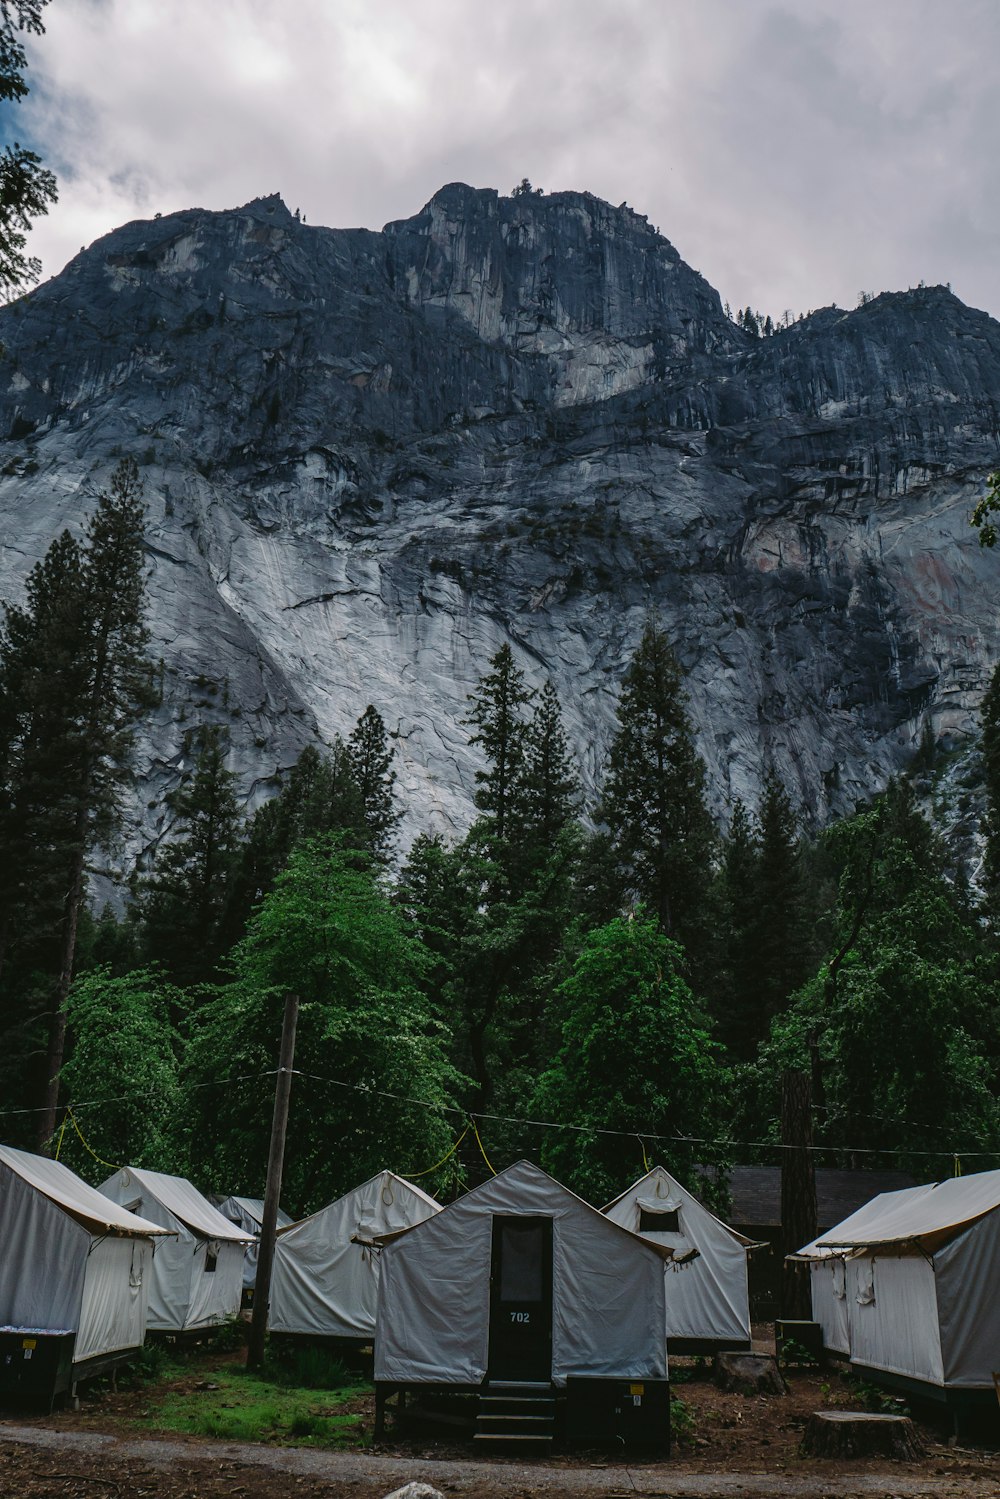 Voir la photographie des tentes de la Maison Blanche près des arbres sous la montagne noire et grise